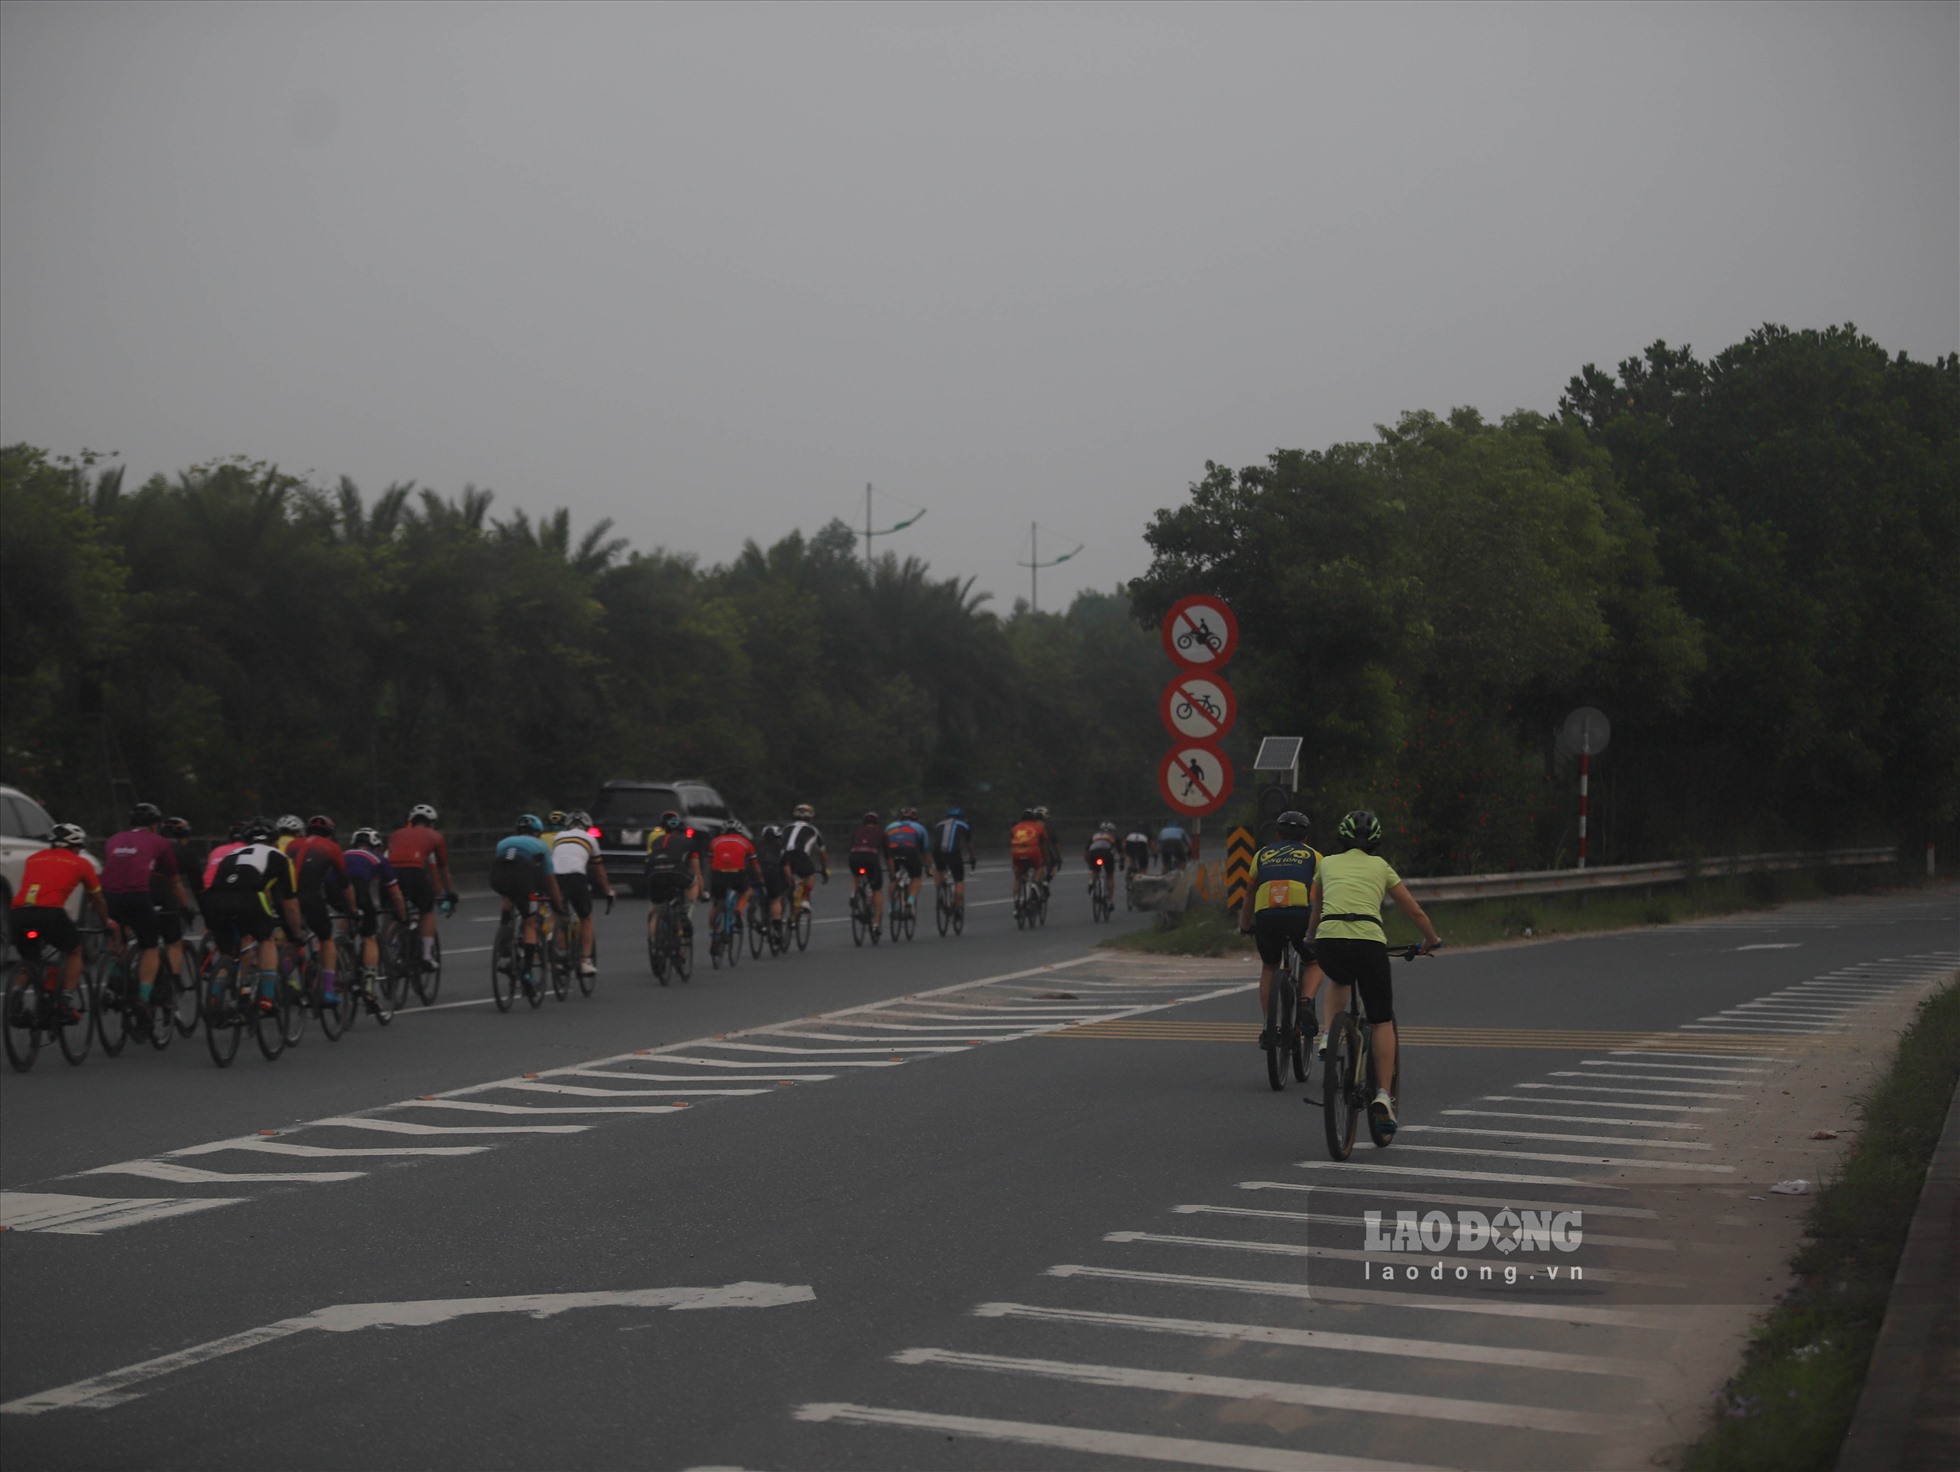 Đường Võ Nguyên Giáp có 6 làn dành riêng cho ô tô, tốc độ tối đa 80-90km/h. Đây cũng là tuyến đường CSGT thường xuyên thực hiện các cuộc đón, dẫn đoàn từ sân bay Nội Bài về trung tâm TP Hà Nội.